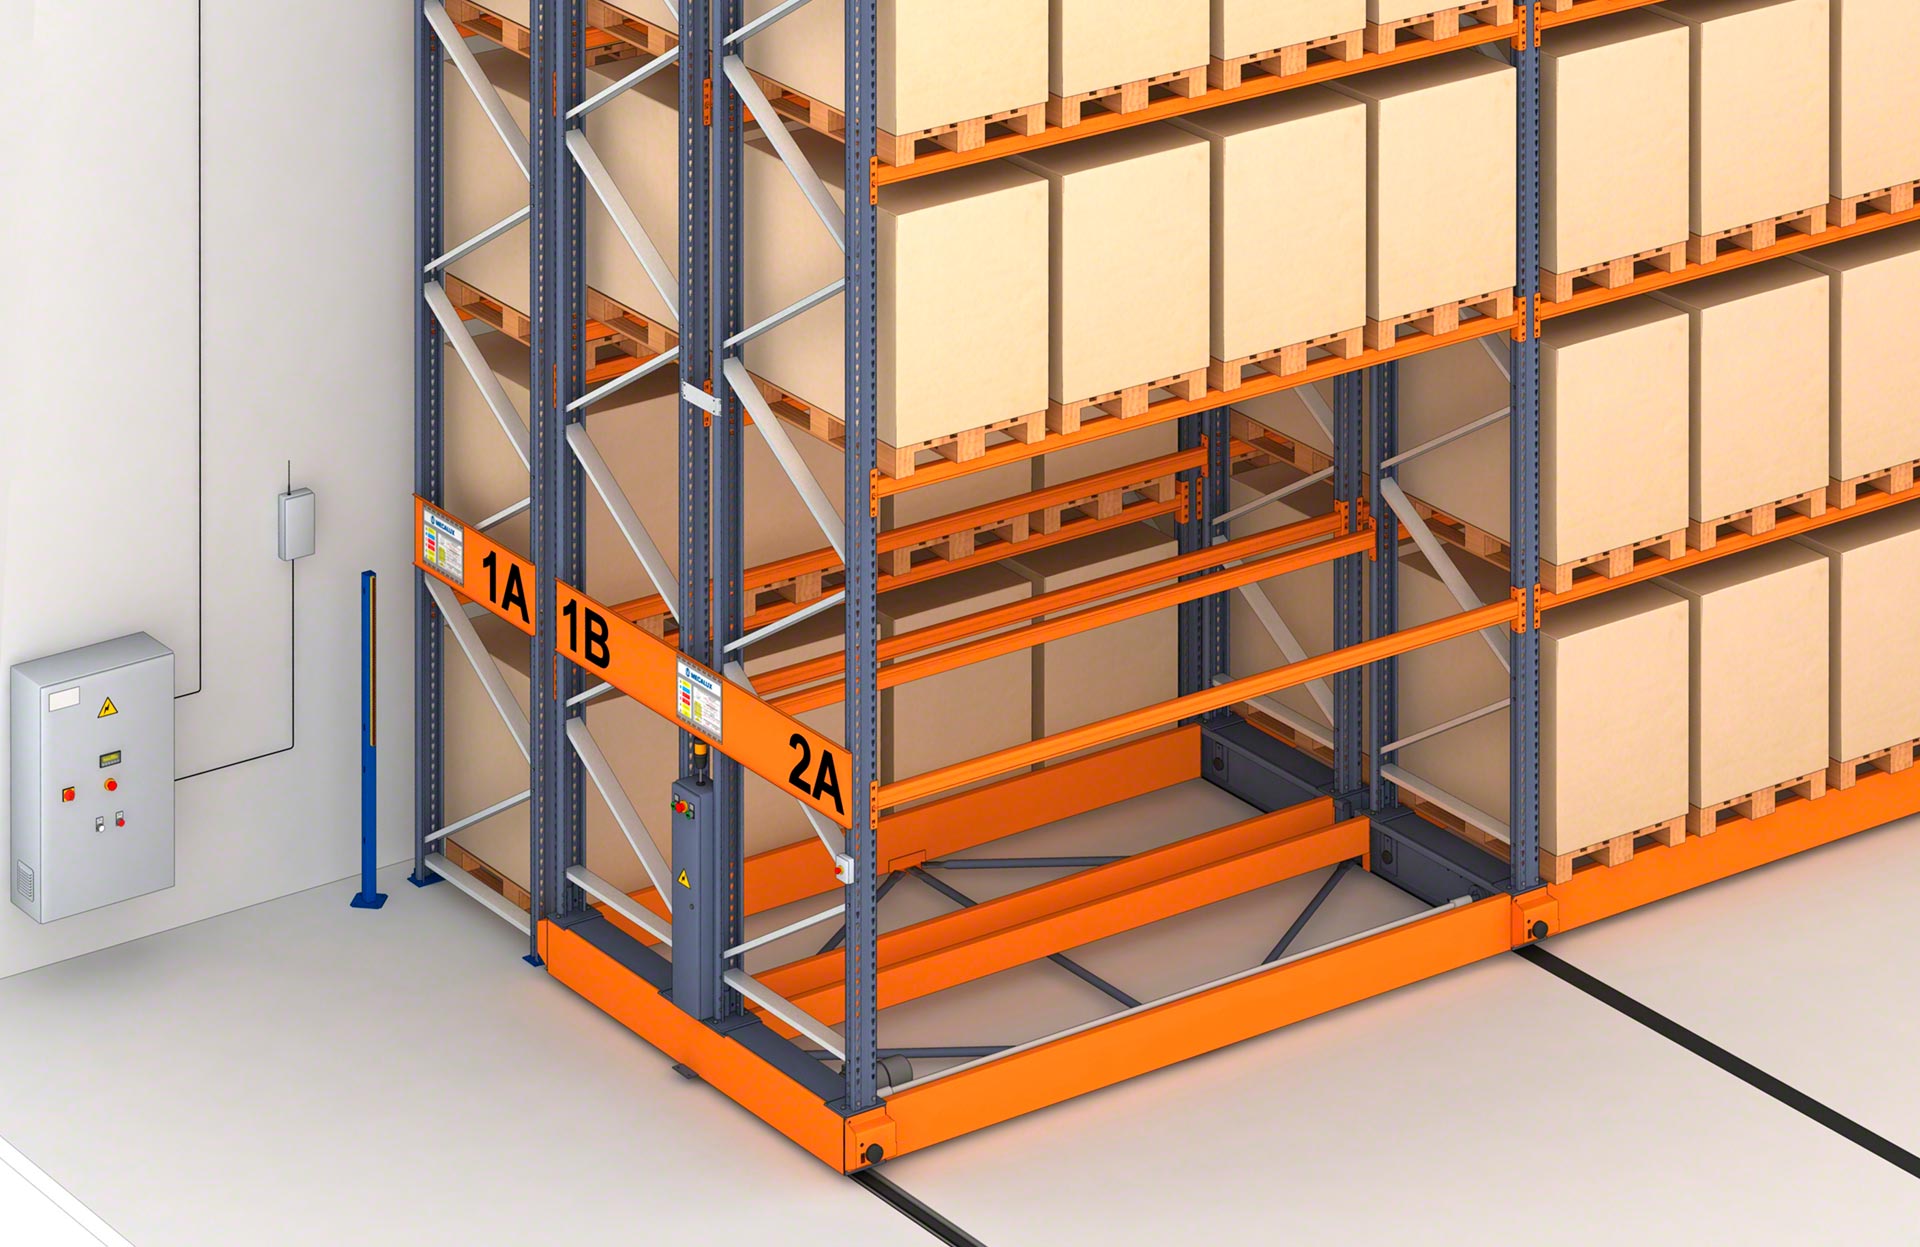 O sistema Movirack combina estantes fixas, que costumam estar localizadas nas extremidades, e estantes móveis